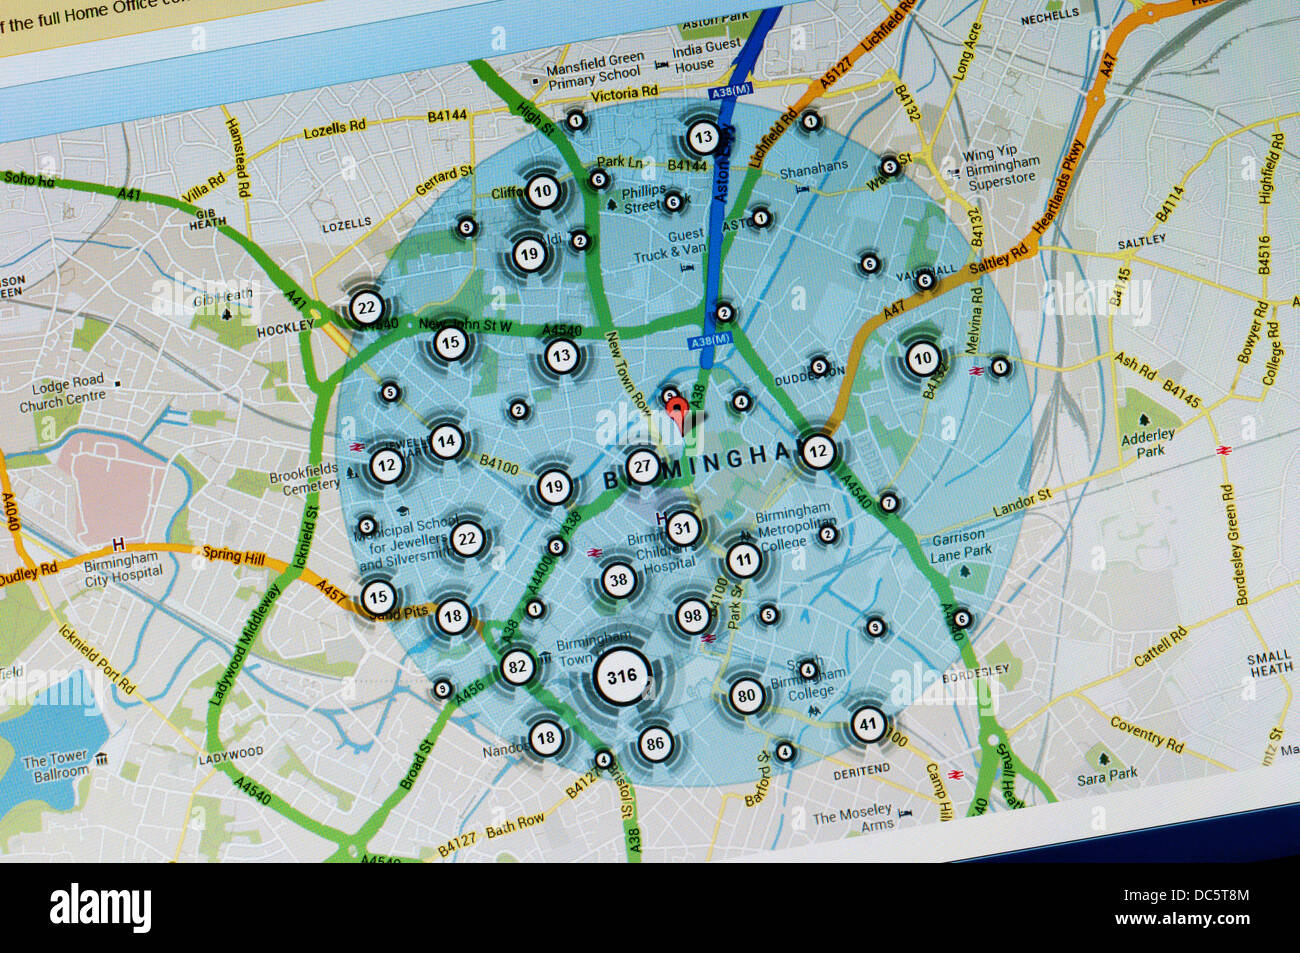 Inzidenz von Verbrechen im Zentrum von Birmingham auf Kriminalität Karte von police.uk angezeigt. Stockfoto